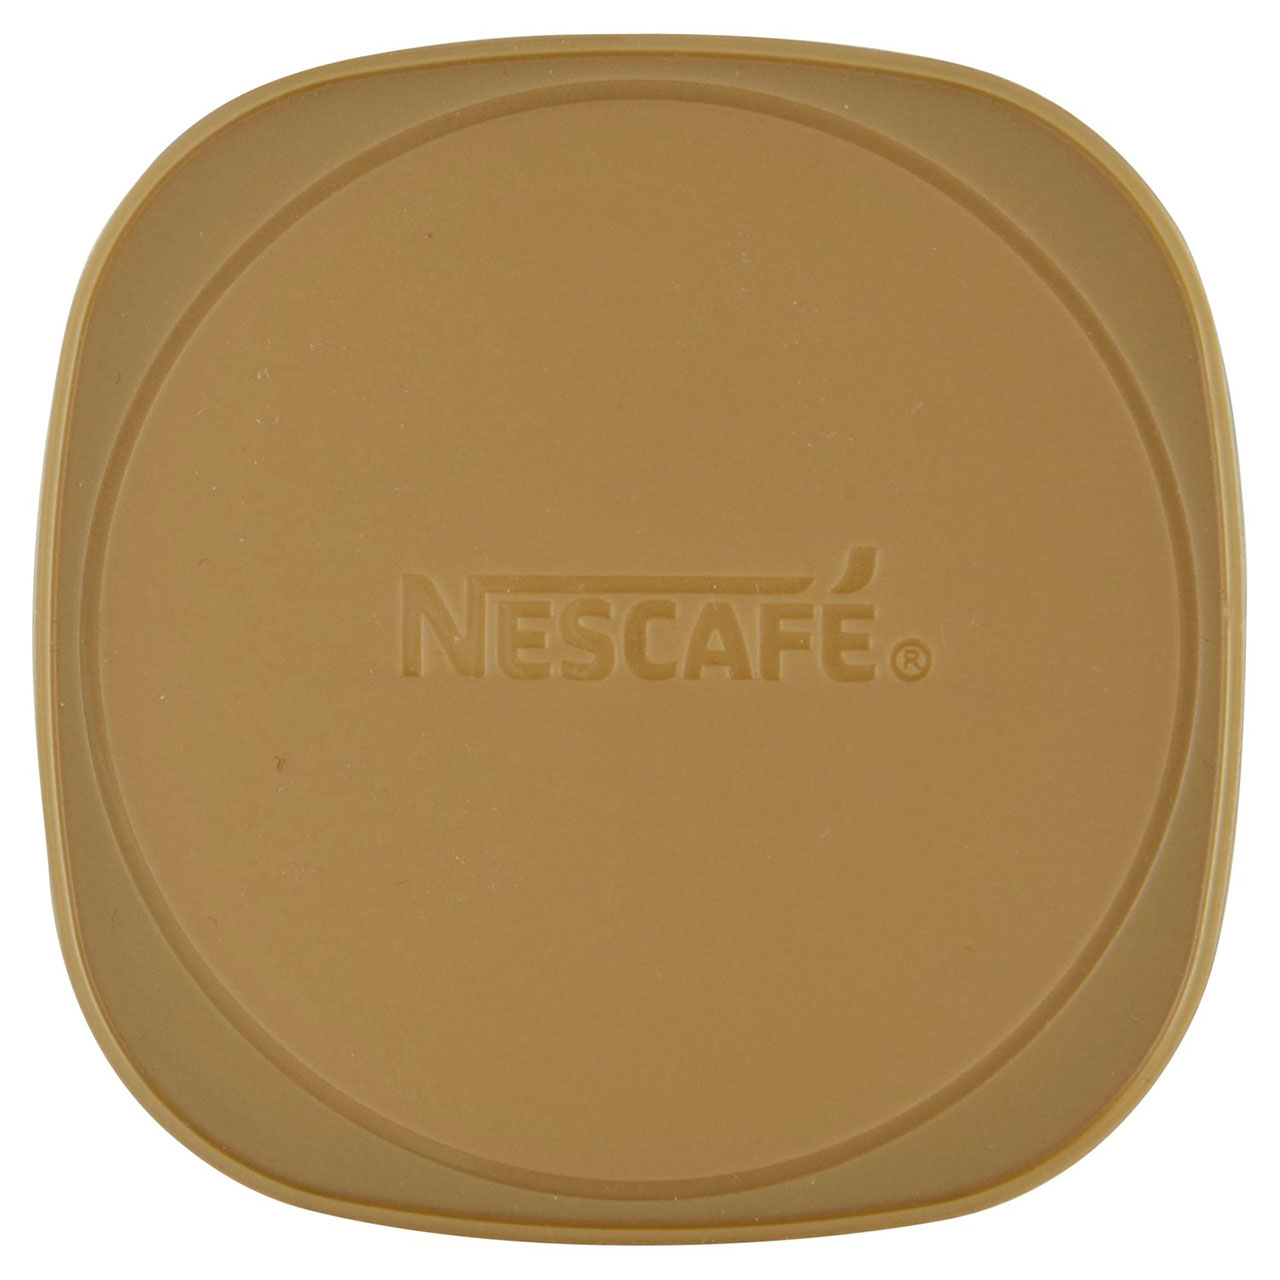 Nescafé Gold Decaf in vendita online